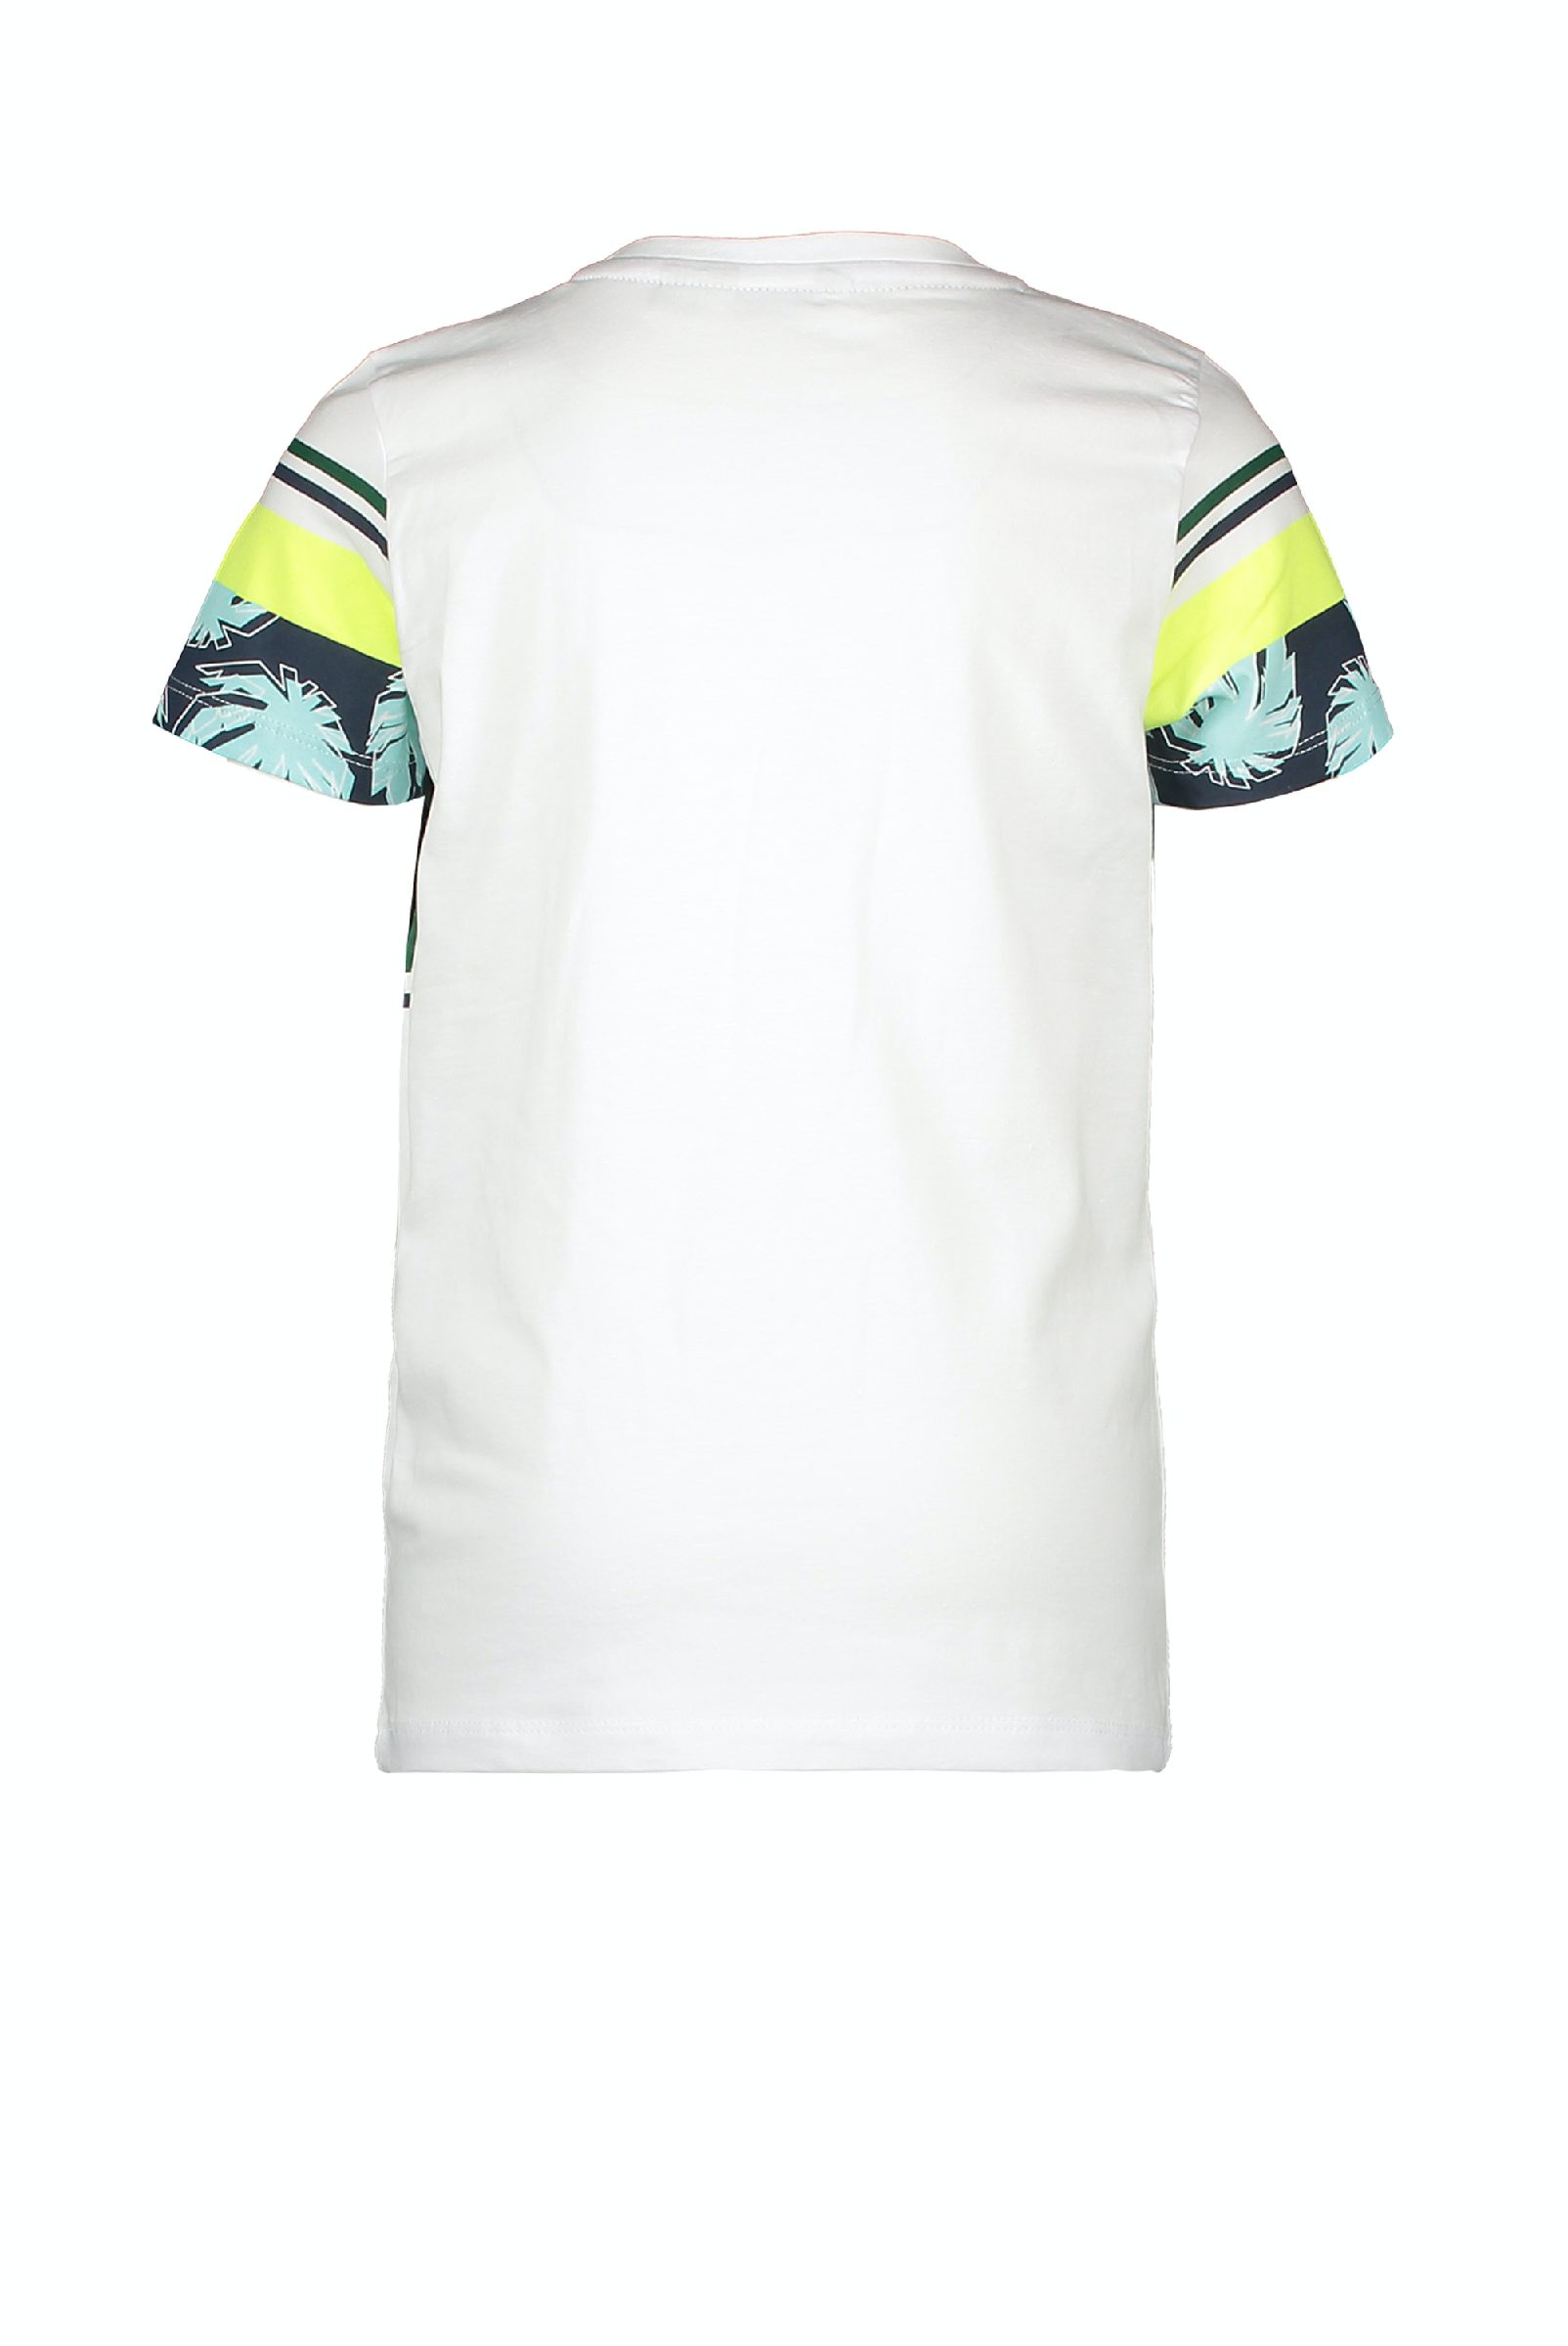 Jongens MT t-shirt chest&sleeve print van Moodstreet in de kleur white in maat 122, 128.